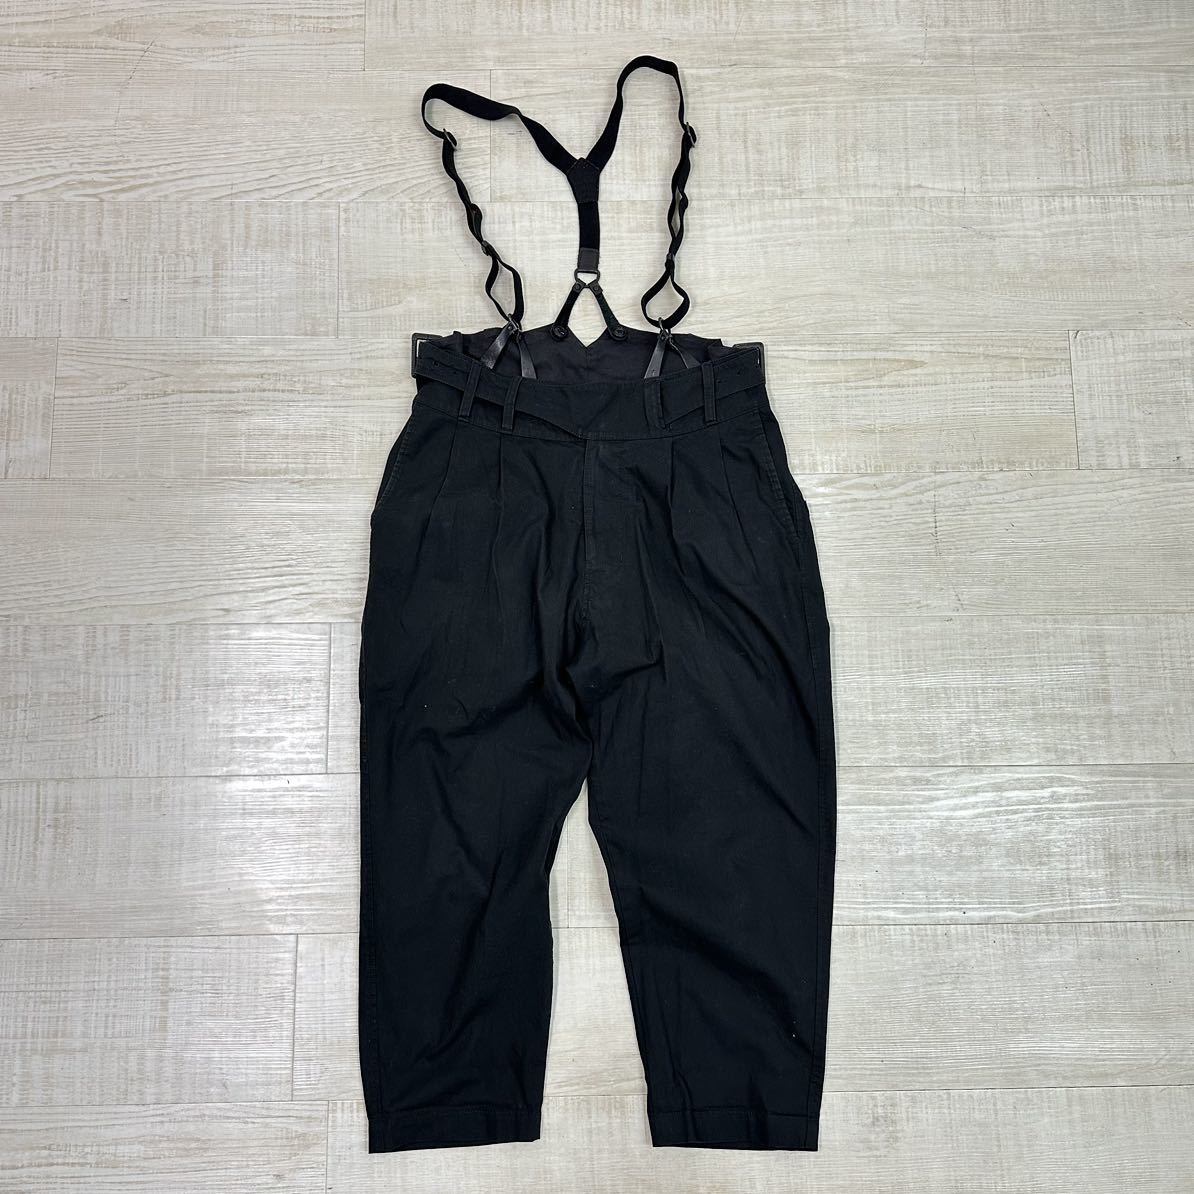 Y's Yohji Yamamoto ワイズ ヨウジヤマモト サスペンダー 付き テーパード グルカ パンツ MADE IN JAPAN BLACK ブラック 系 サイズ 2_画像1